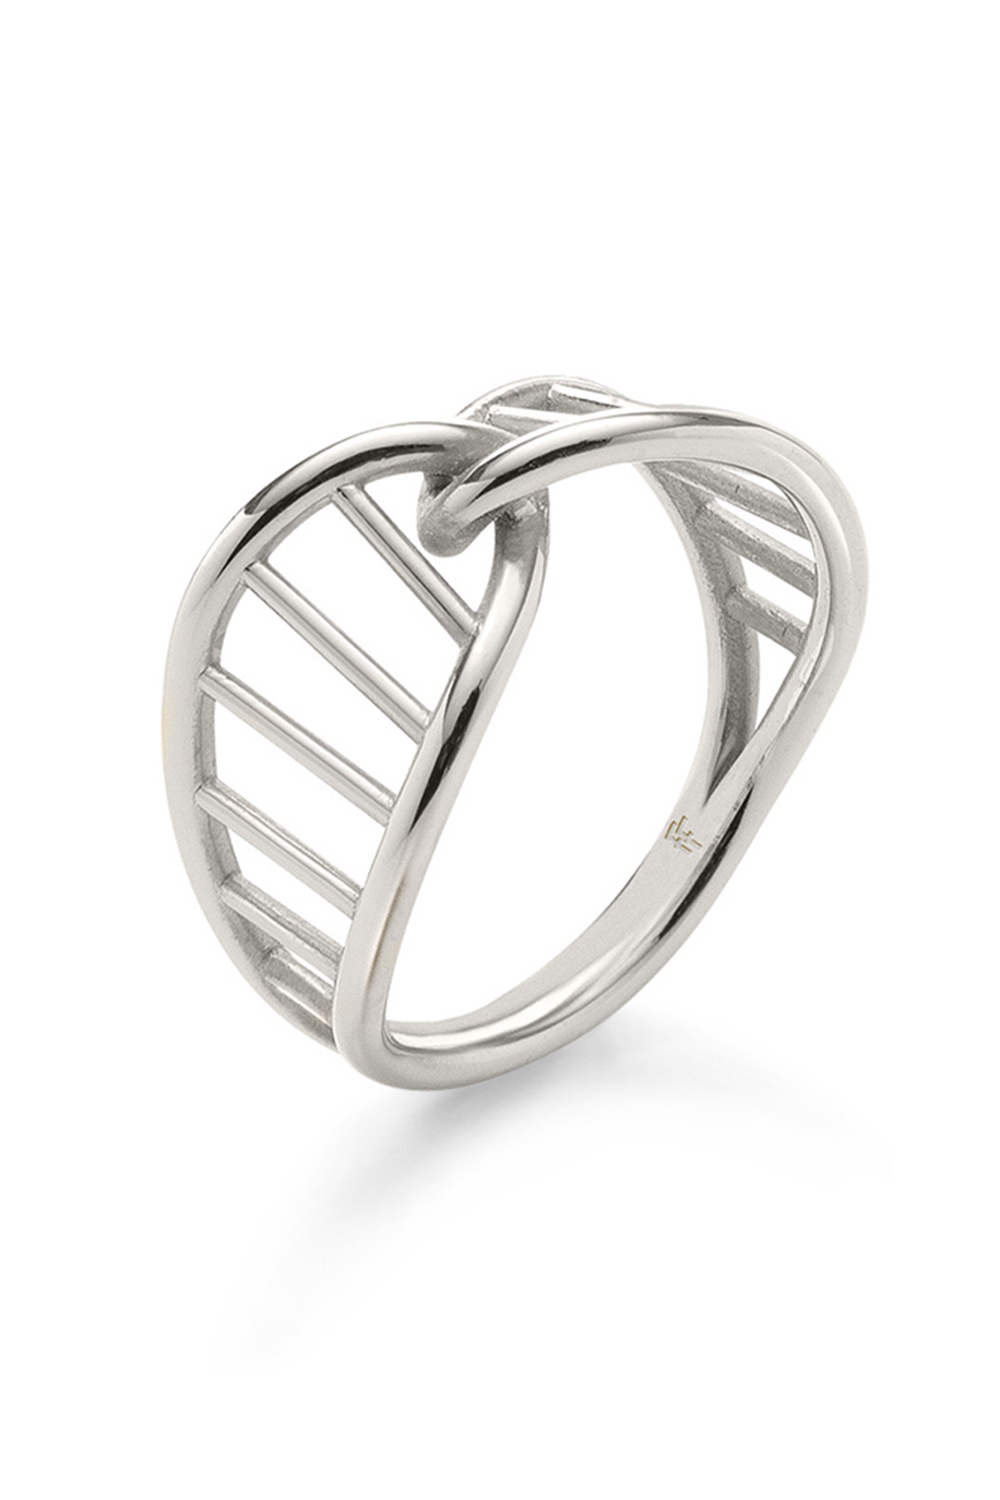 Γυναικεία/Αξεσουάρ/Κοσμήματα/Δαχτυλίδια FOLLI FOLLIE - Γυναικείo ασημένιο δαχτυλίδι FOLLI FOLLIE STYLE DNA